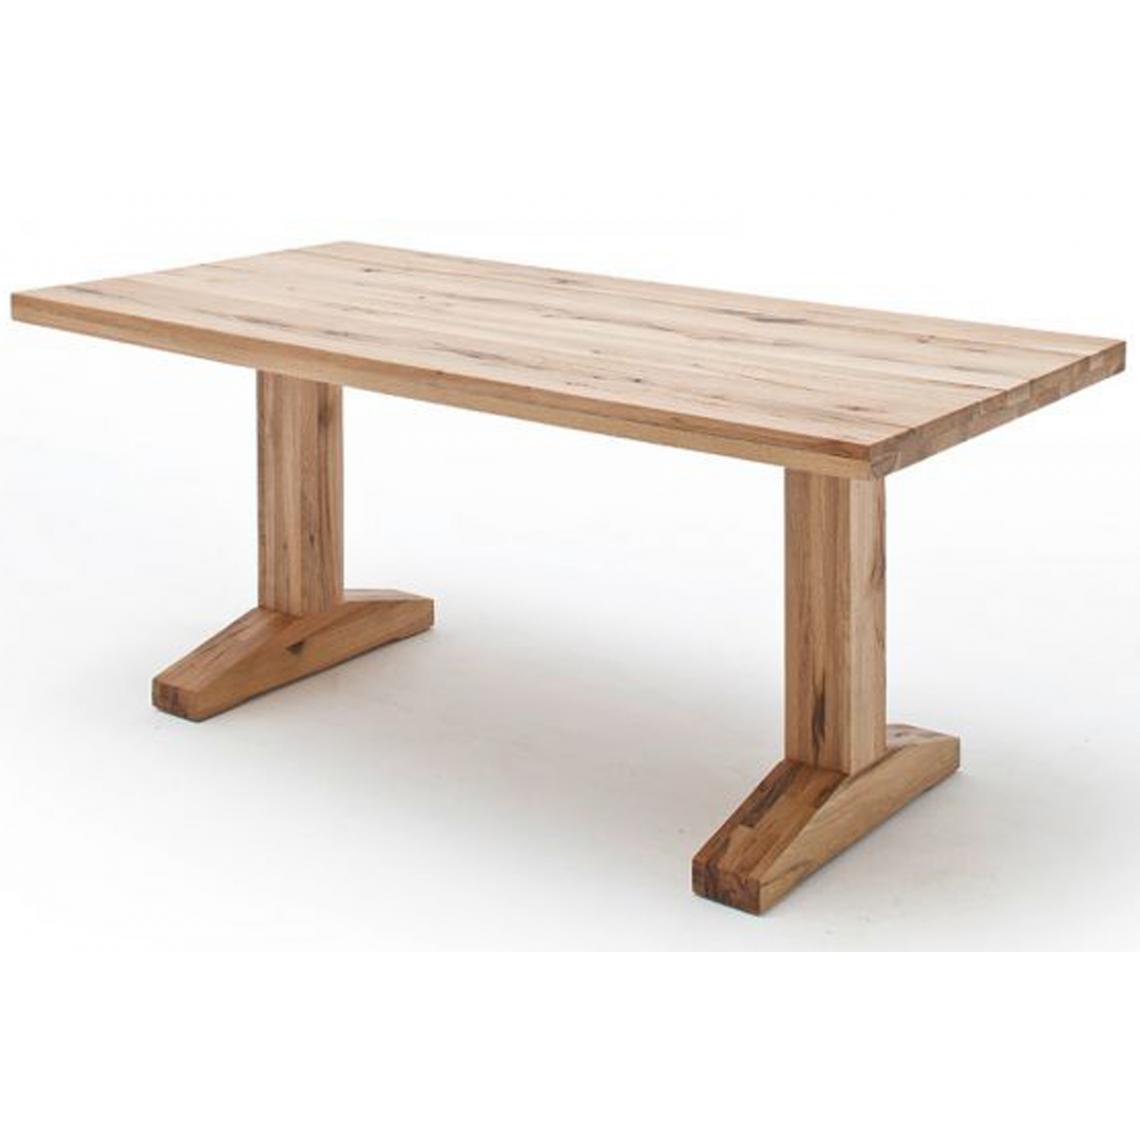 Pegane - Table à manger en chêne sauvage, laqué mat massif - L.220 x H.76 x P.100 cm - Tables à manger